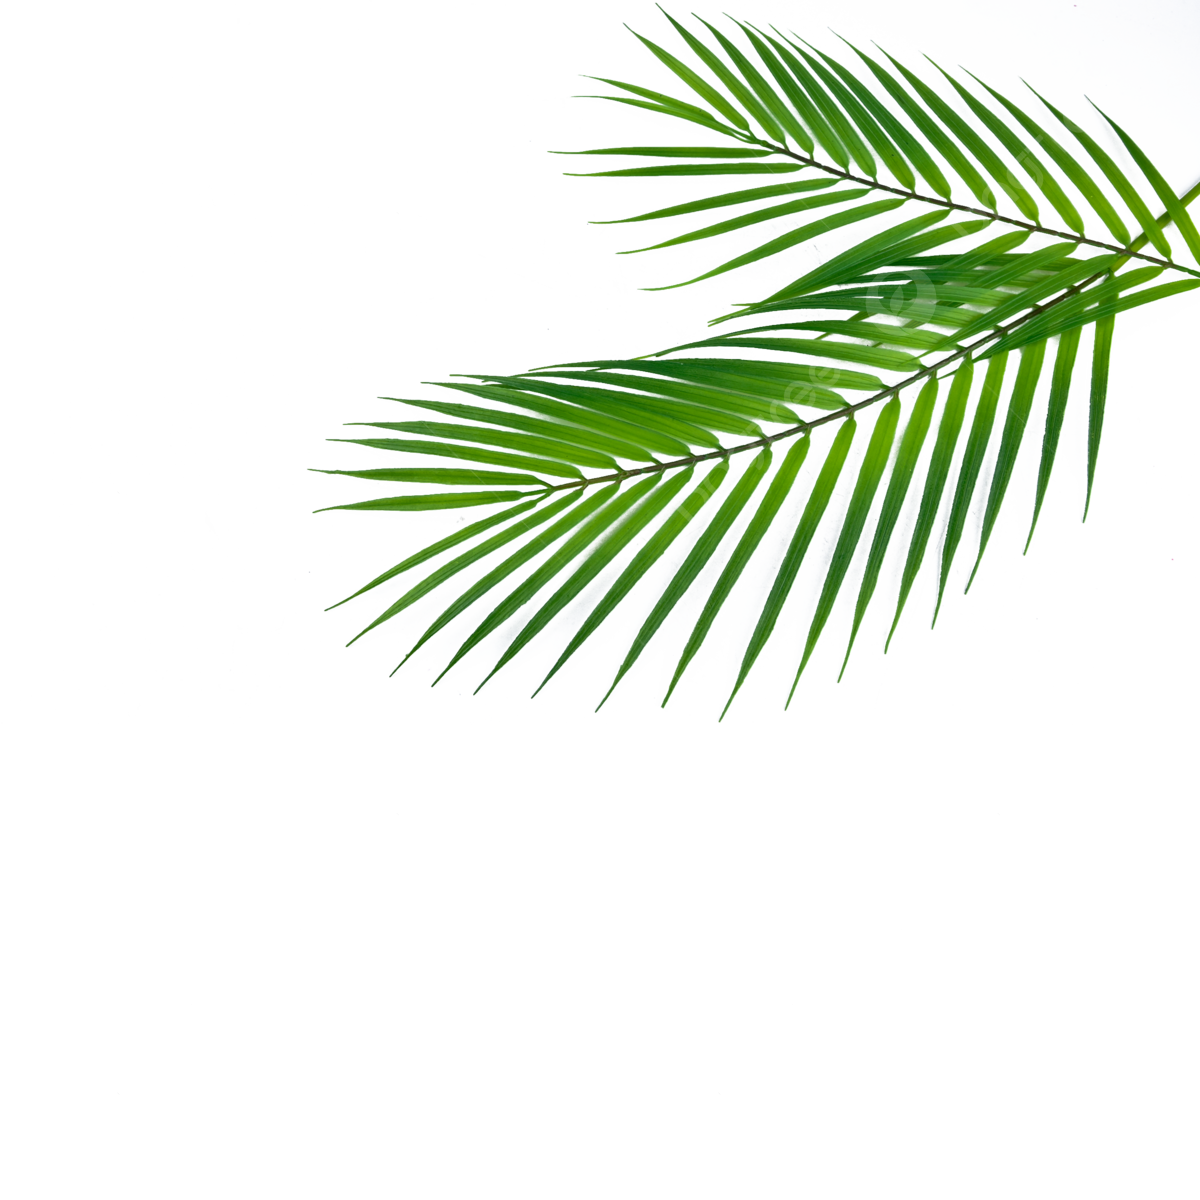 Palm Leaf PNG Image